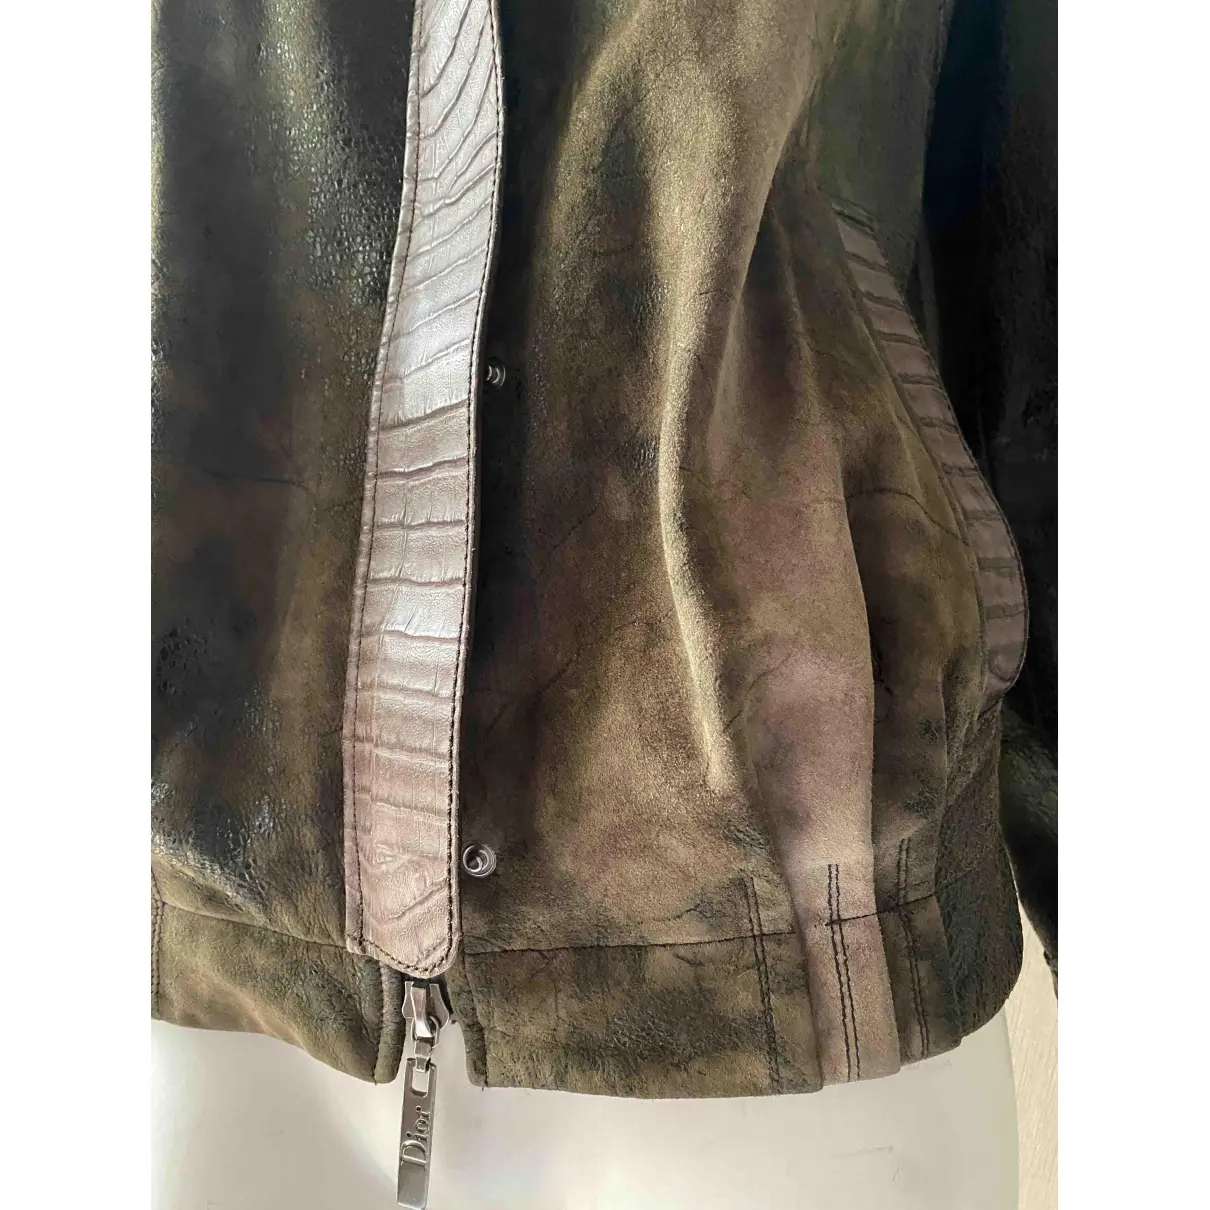 Buy Dior Leather jacket online - Vintage